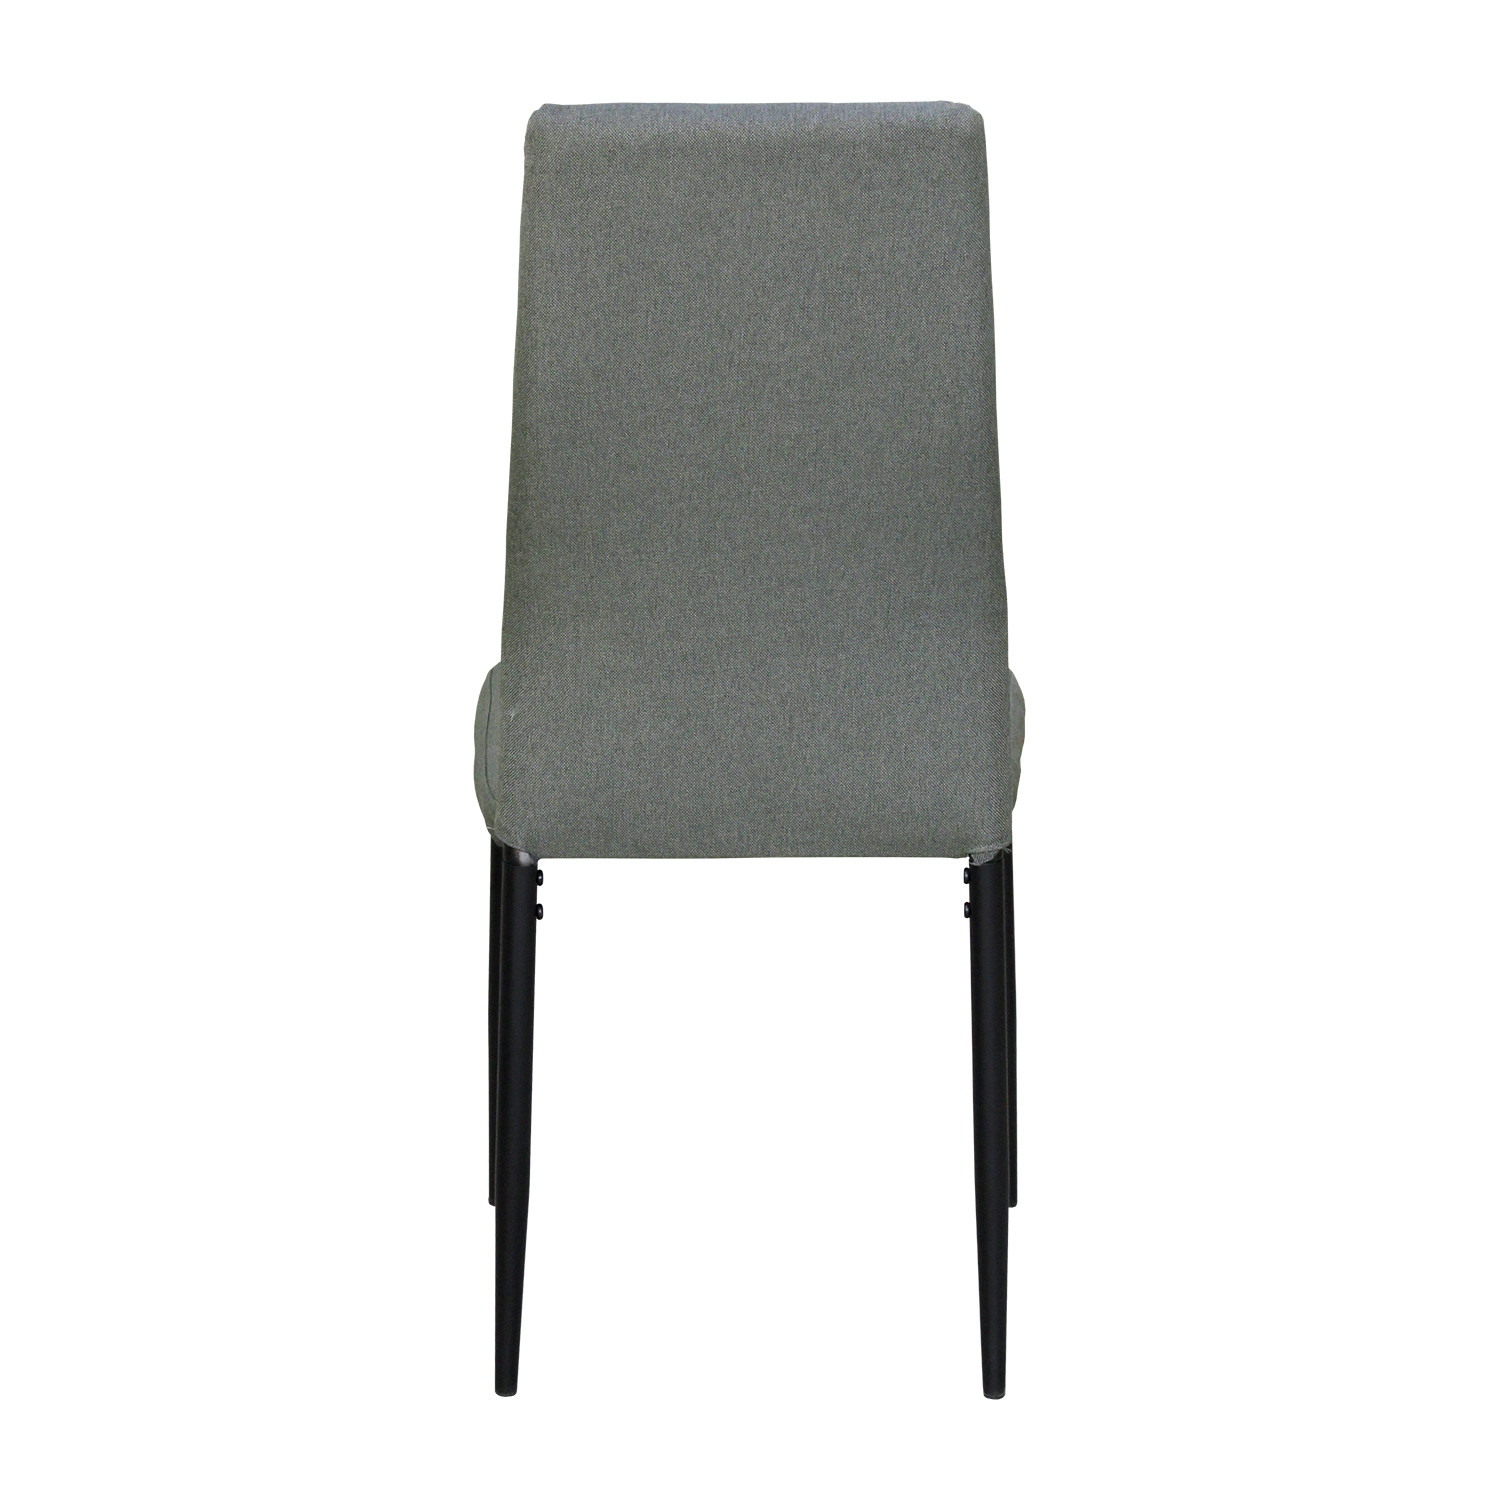 IDEA обеденный стул KAPPA серый